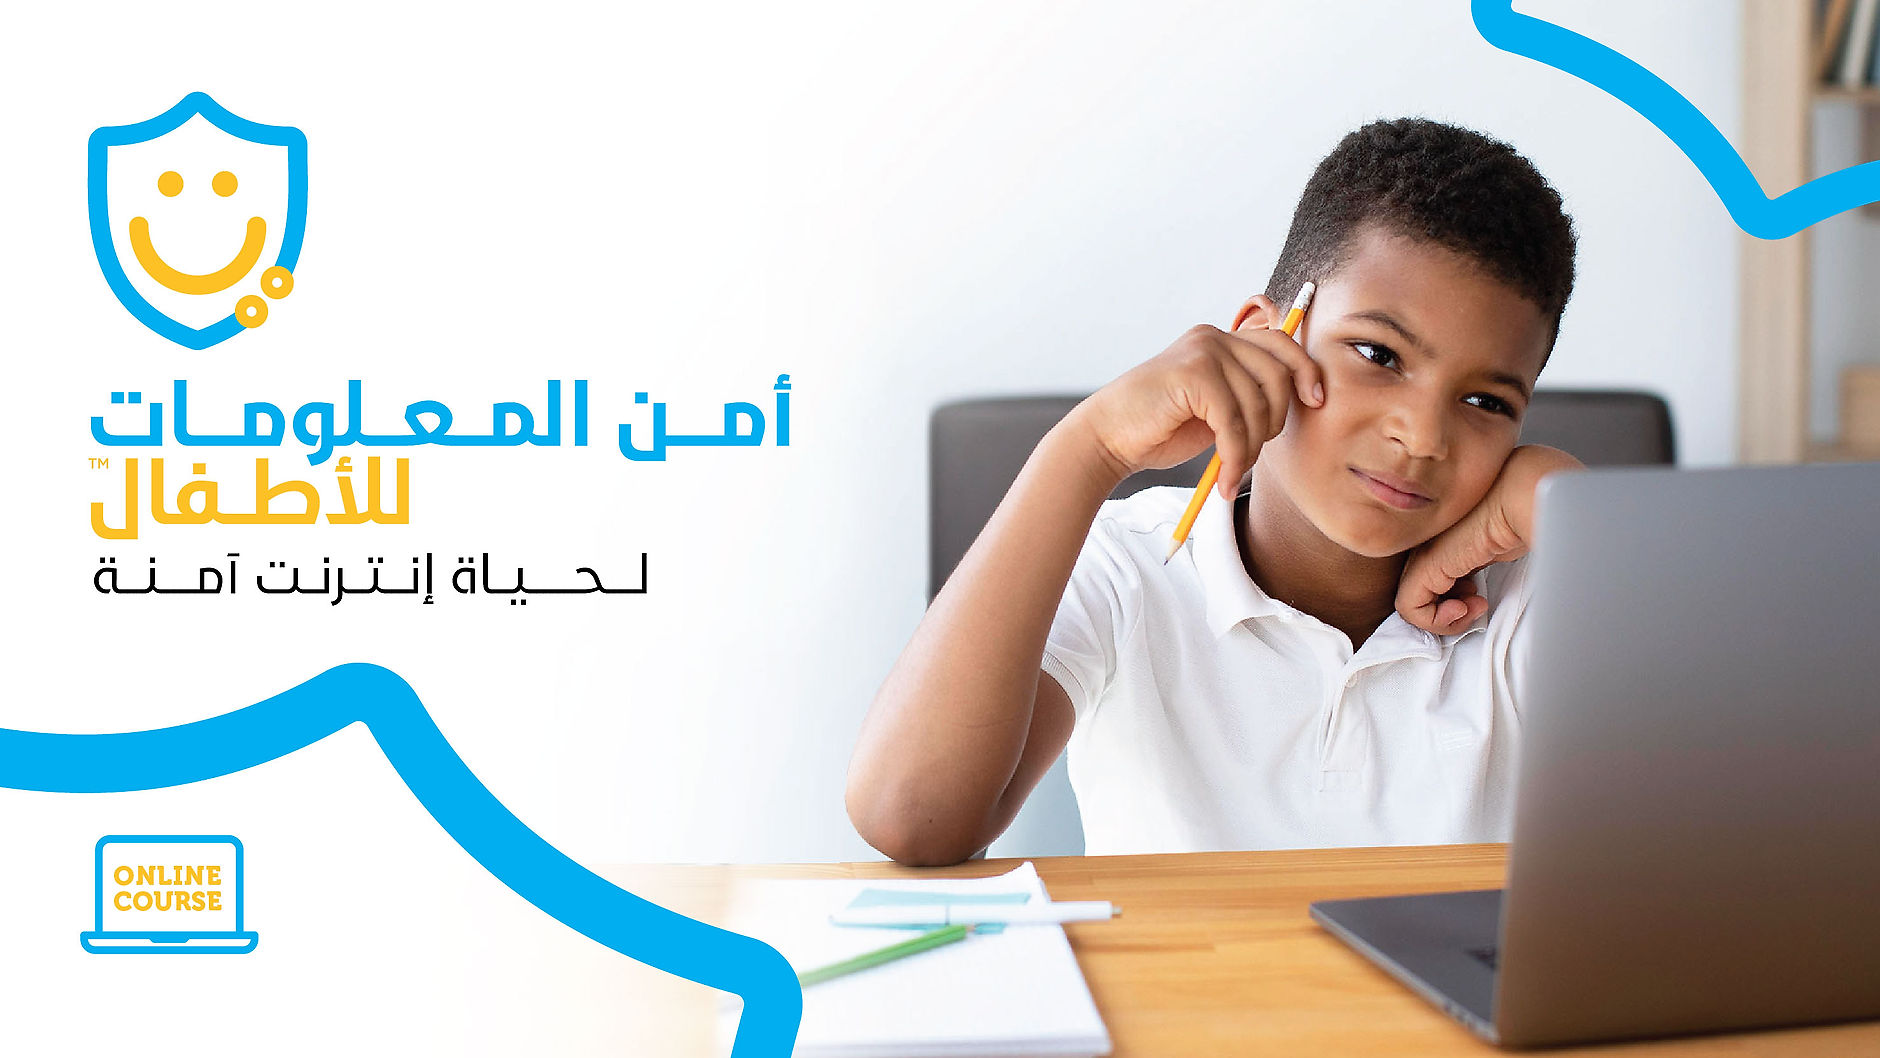 Kids CyberSecurity (Arabic)